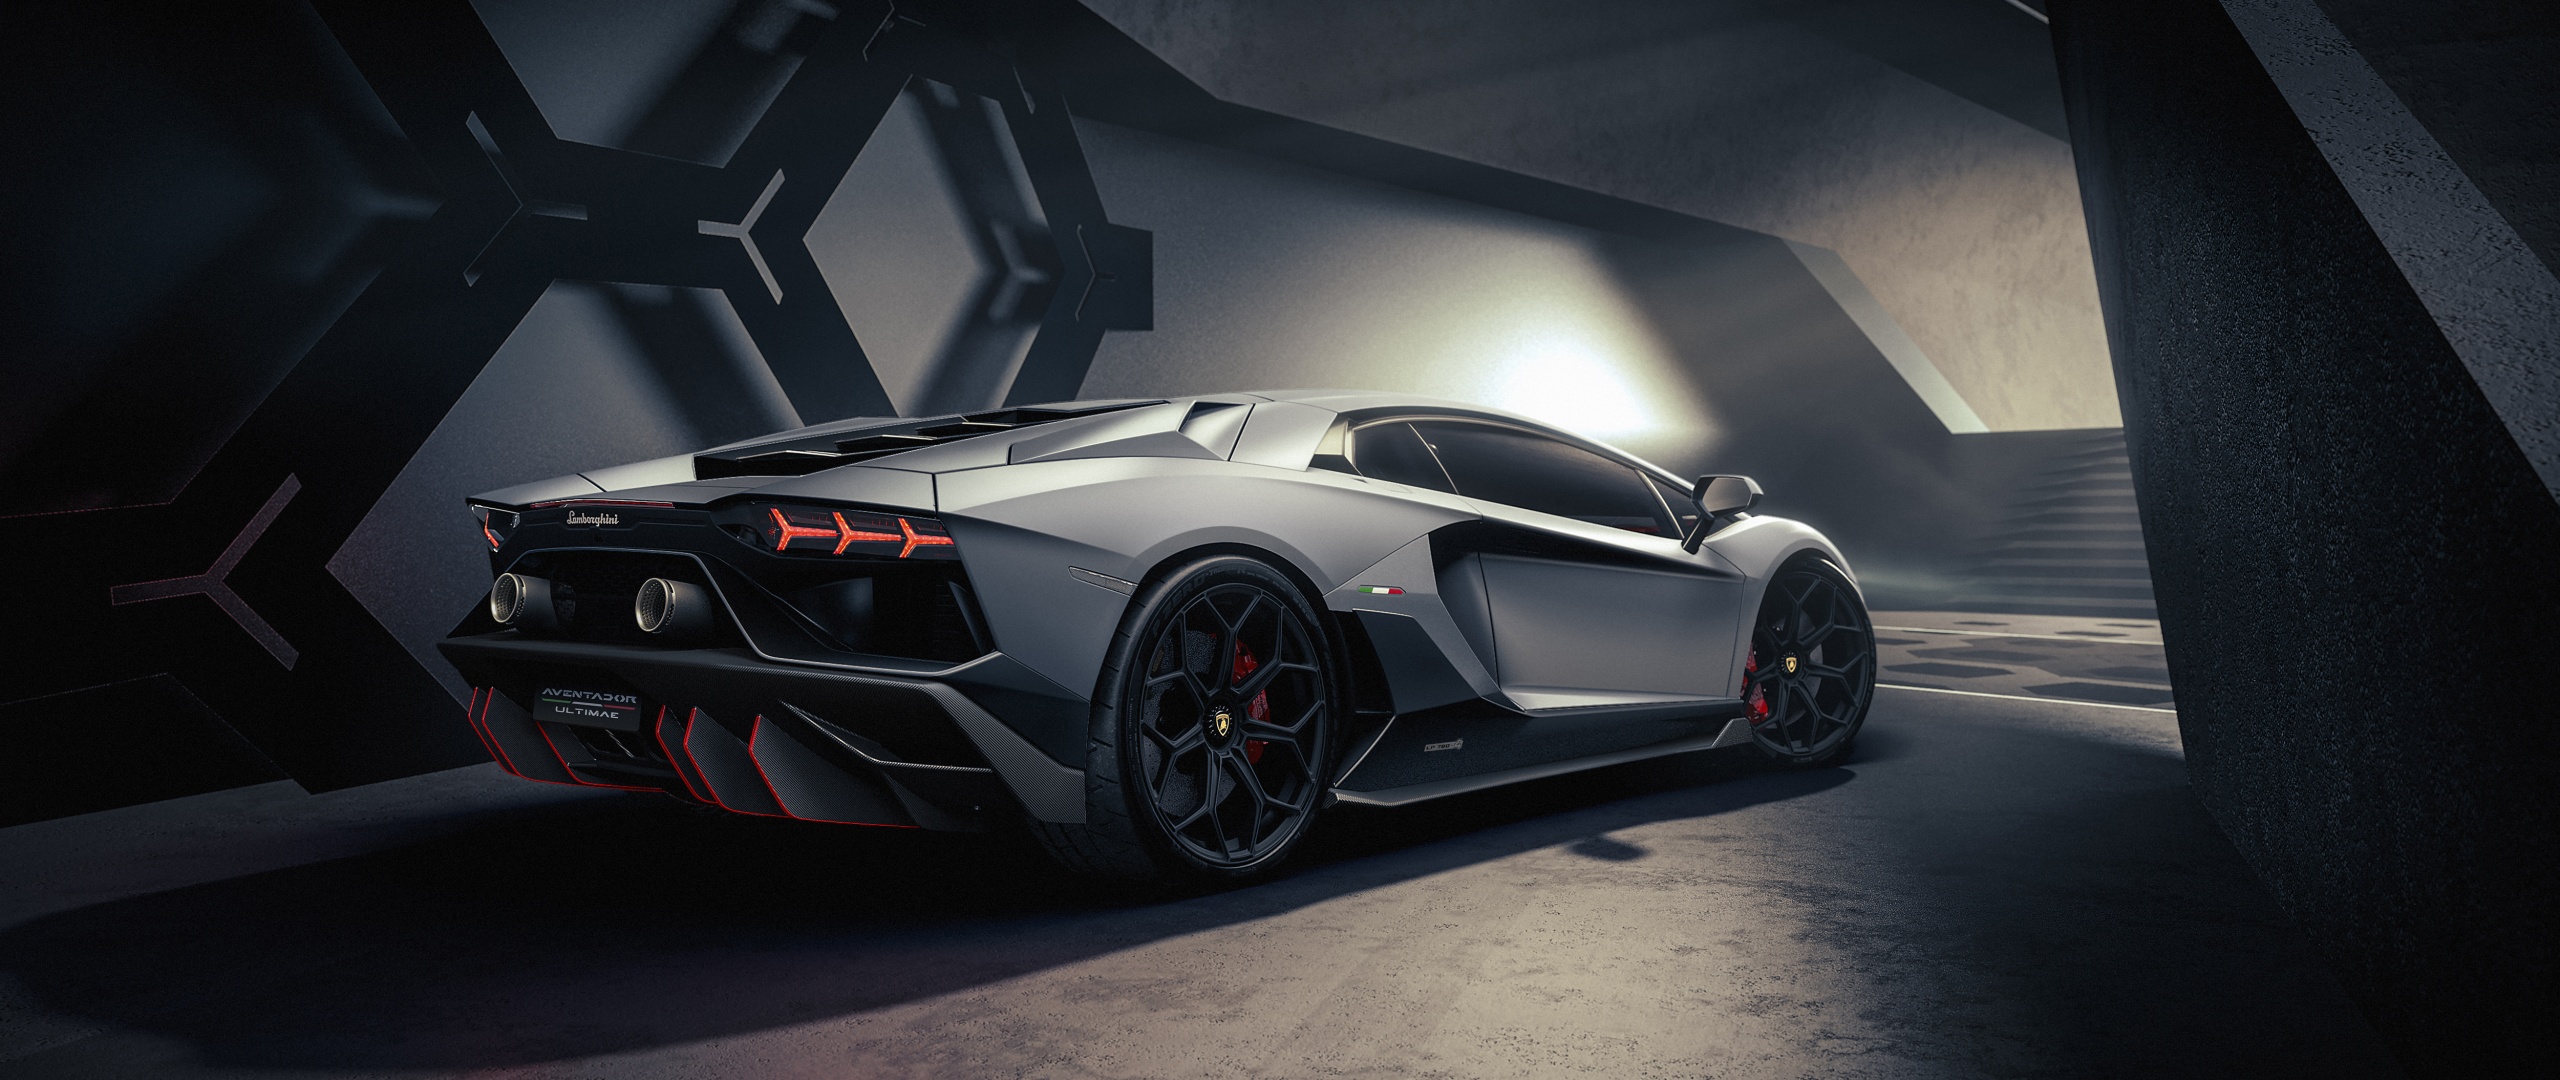 Lamborghini Aventador: Hãy trải nghiệm với siêu phẩm Lamborghini Aventador, với thiết kế siêu đẹp và khả năng vận hành mạnh mẽ. Chiếc siêu xe này sẽ làm bạn cảm giác như đang đứng trên đỉnh của thế giới, và hứa hẹn sẽ mang đến những trải nghiệm khó quên. Nhấn vào hình ảnh để khám phá thêm về Lamborghini Aventador.